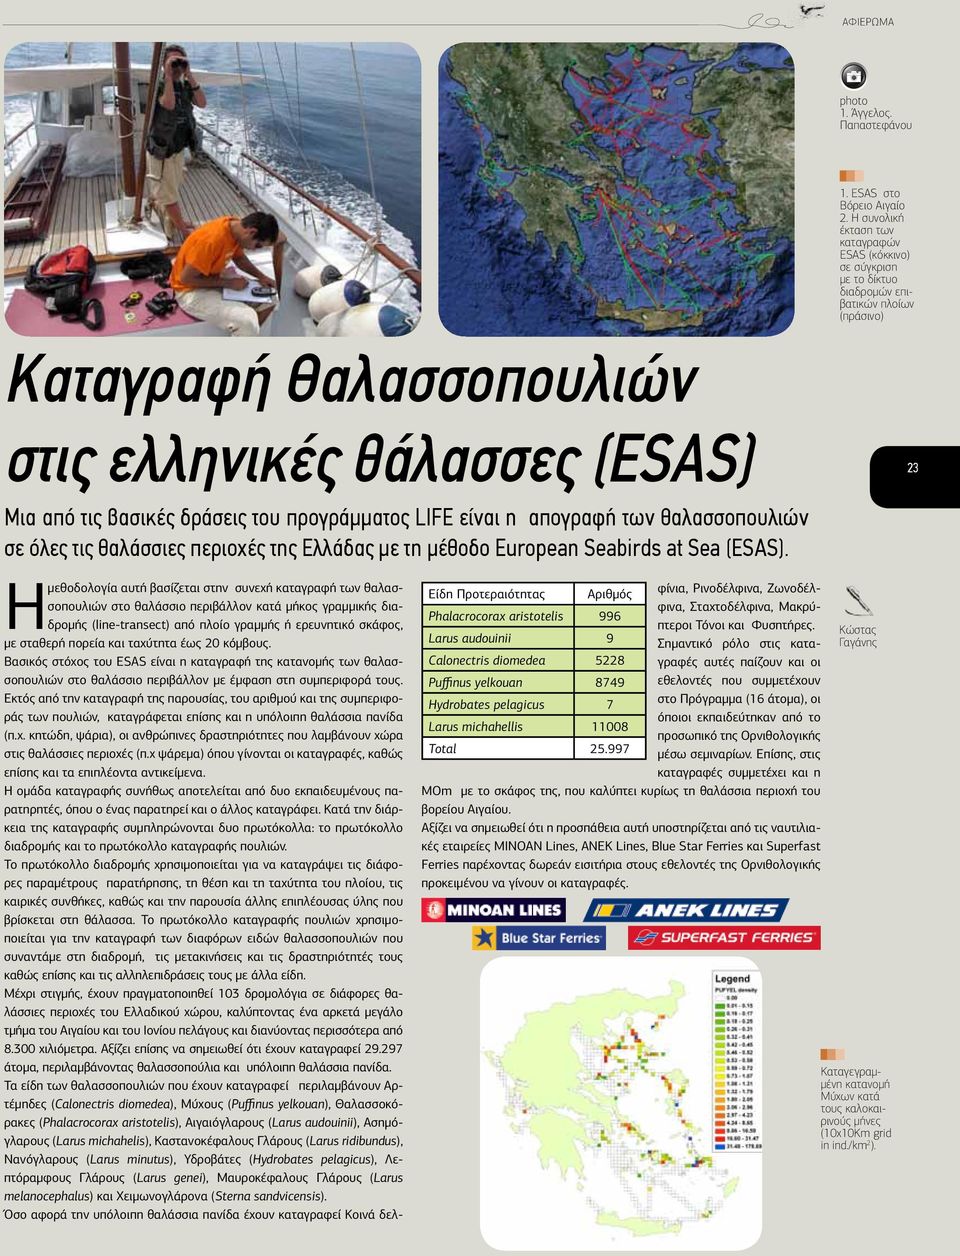 του προγράμματος LIFE είναι η απογραφή των θαλασσοπουλιών σε όλες τις θαλάσσιες περιοχές της Ελλάδας με τη μέθοδο European Seabirds at Sea (ESAS).